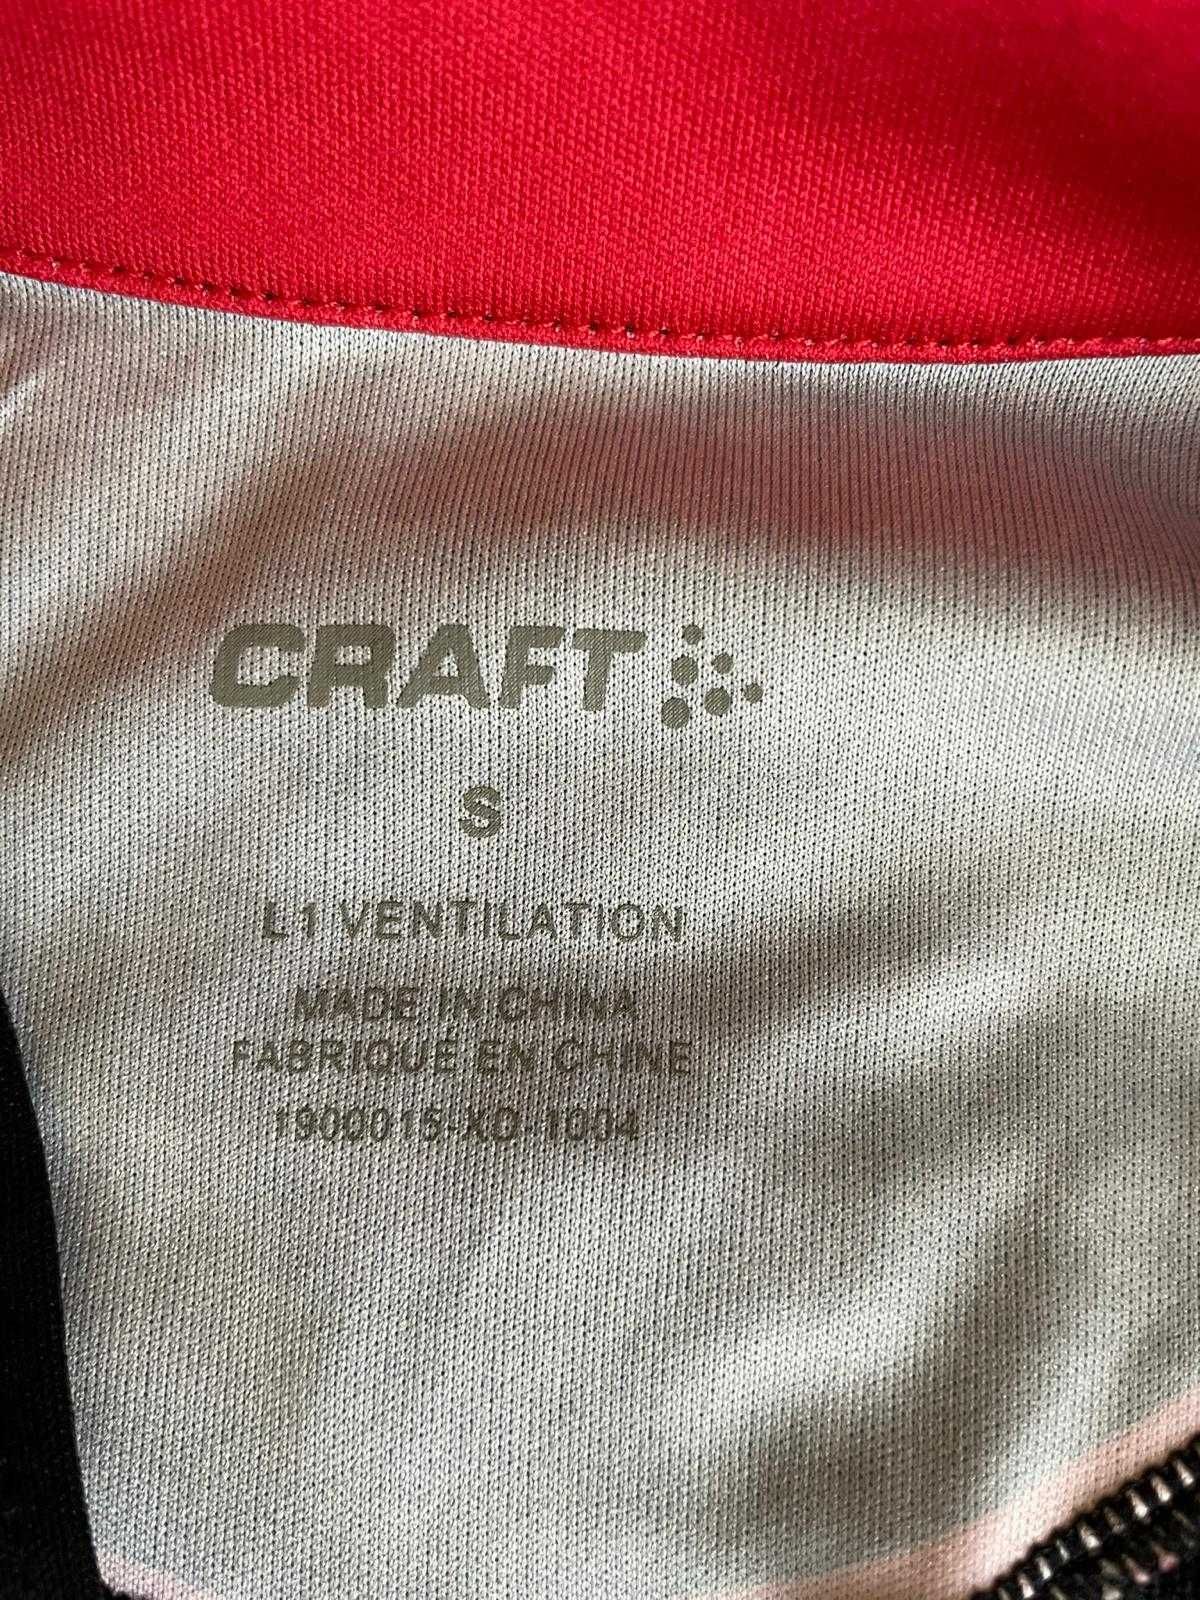 Męska koszulka rowerowa Craft, r. S igła